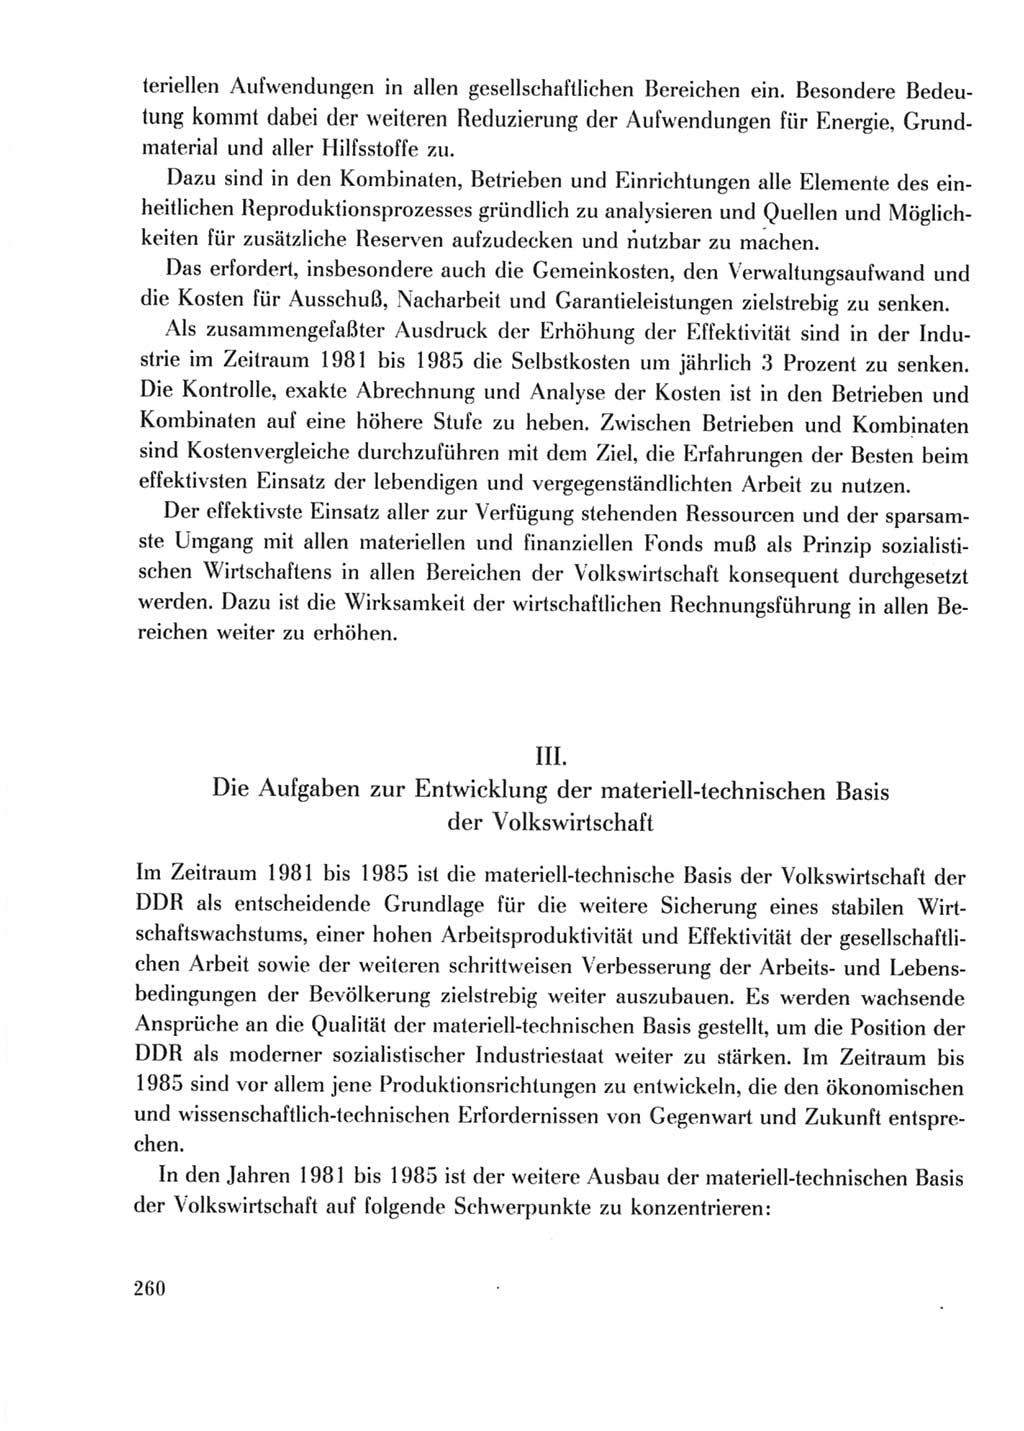 Protokoll der Verhandlungen des Ⅹ. Parteitages der Sozialistischen Einheitspartei Deutschlands (SED) [Deutsche Demokratische Republik (DDR)] 1981, Band 2, Seite 260 (Prot. Verh. Ⅹ. PT SED DDR 1981, Bd. 2, S. 260)